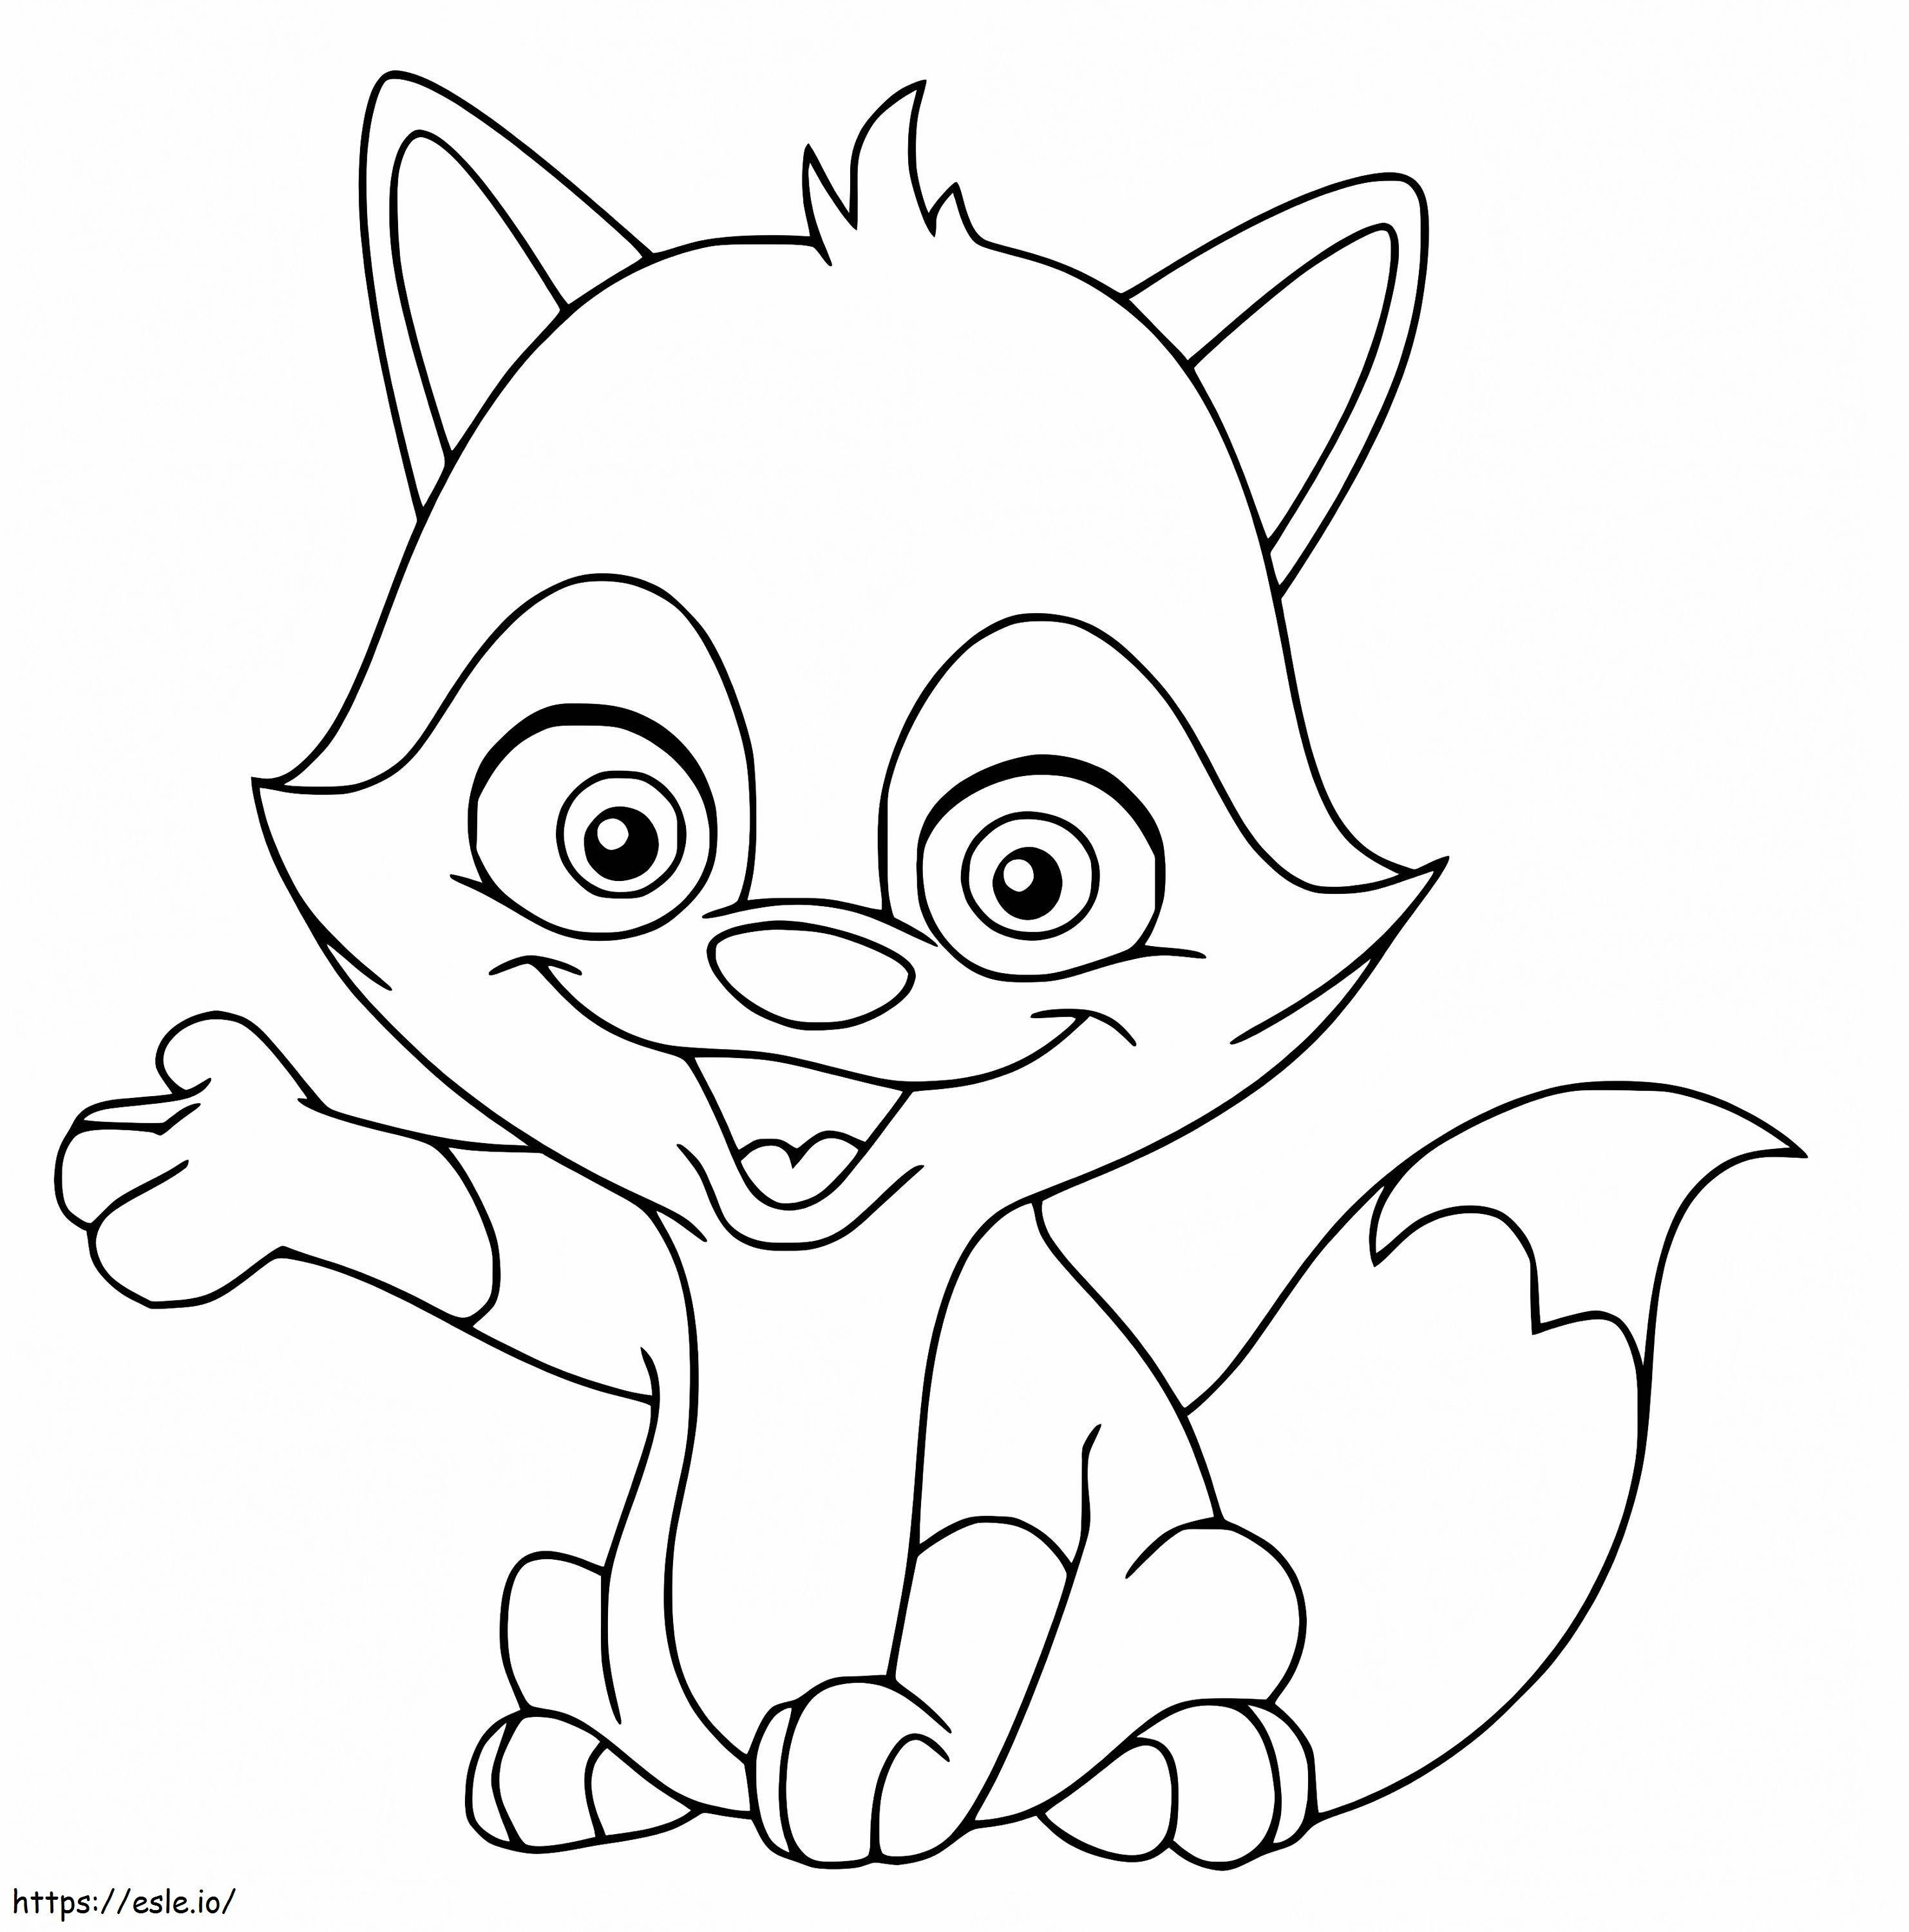 Cartoon Cute Fox coloring page